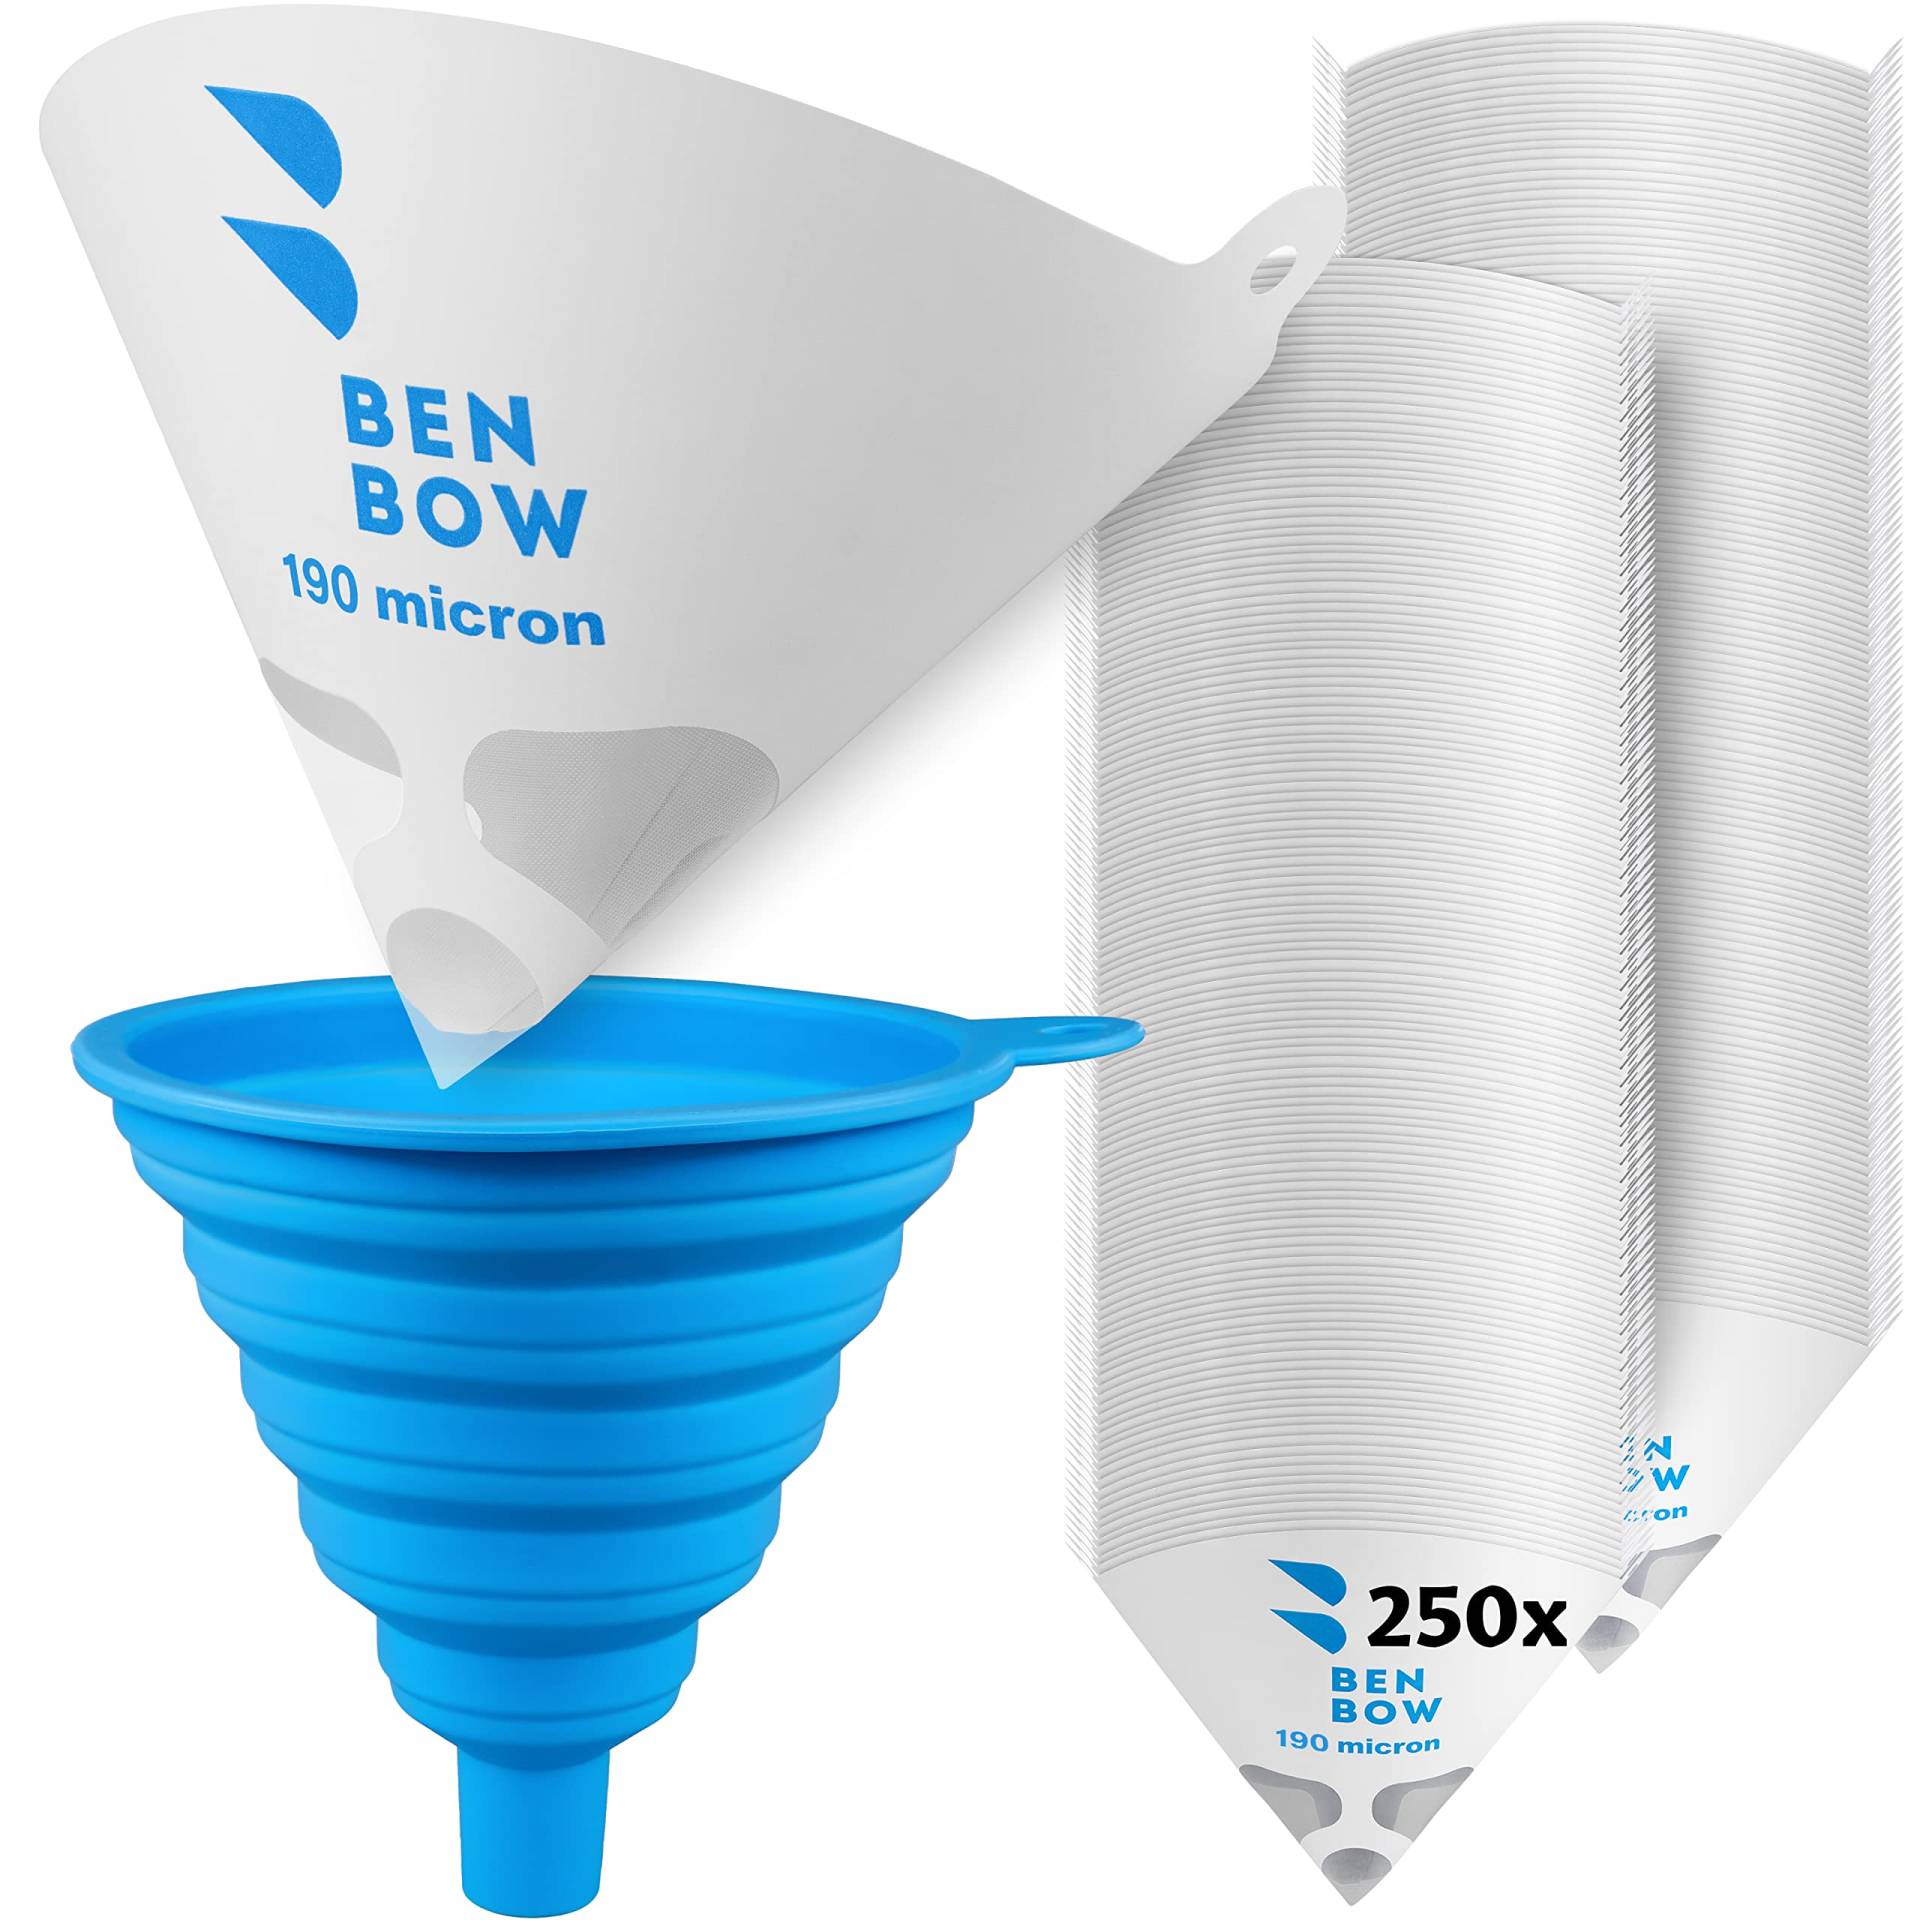 BenBow Lacksieb 190µ x250 Stück - Einweg-Papierfilter mit Nylongewebe und praktischer Silikontrichter - zum Filtern von Lacken und Farben vor Verunreinigungen von BenBow